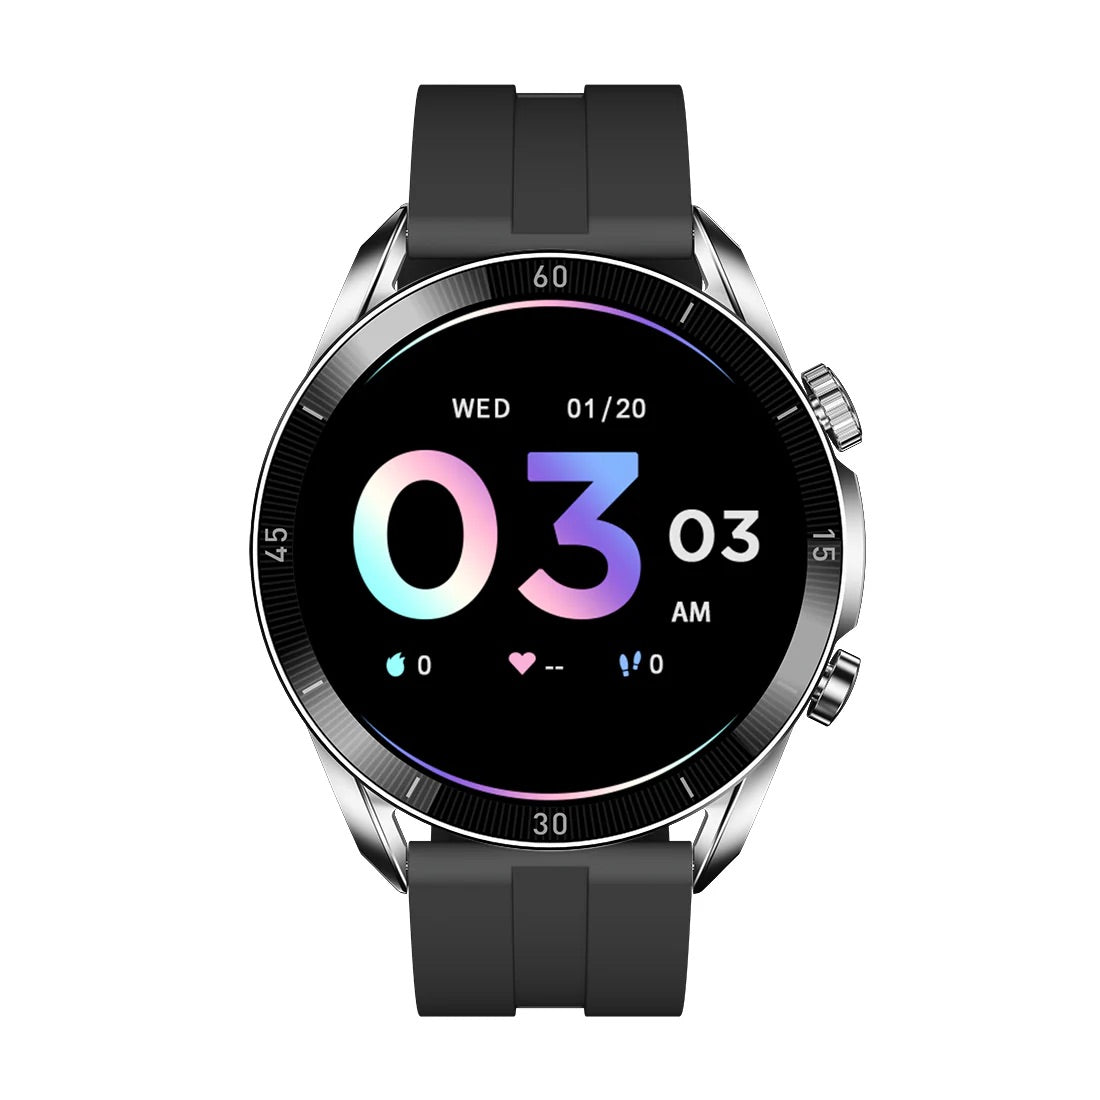 iGear Smartwatch Onyx Series